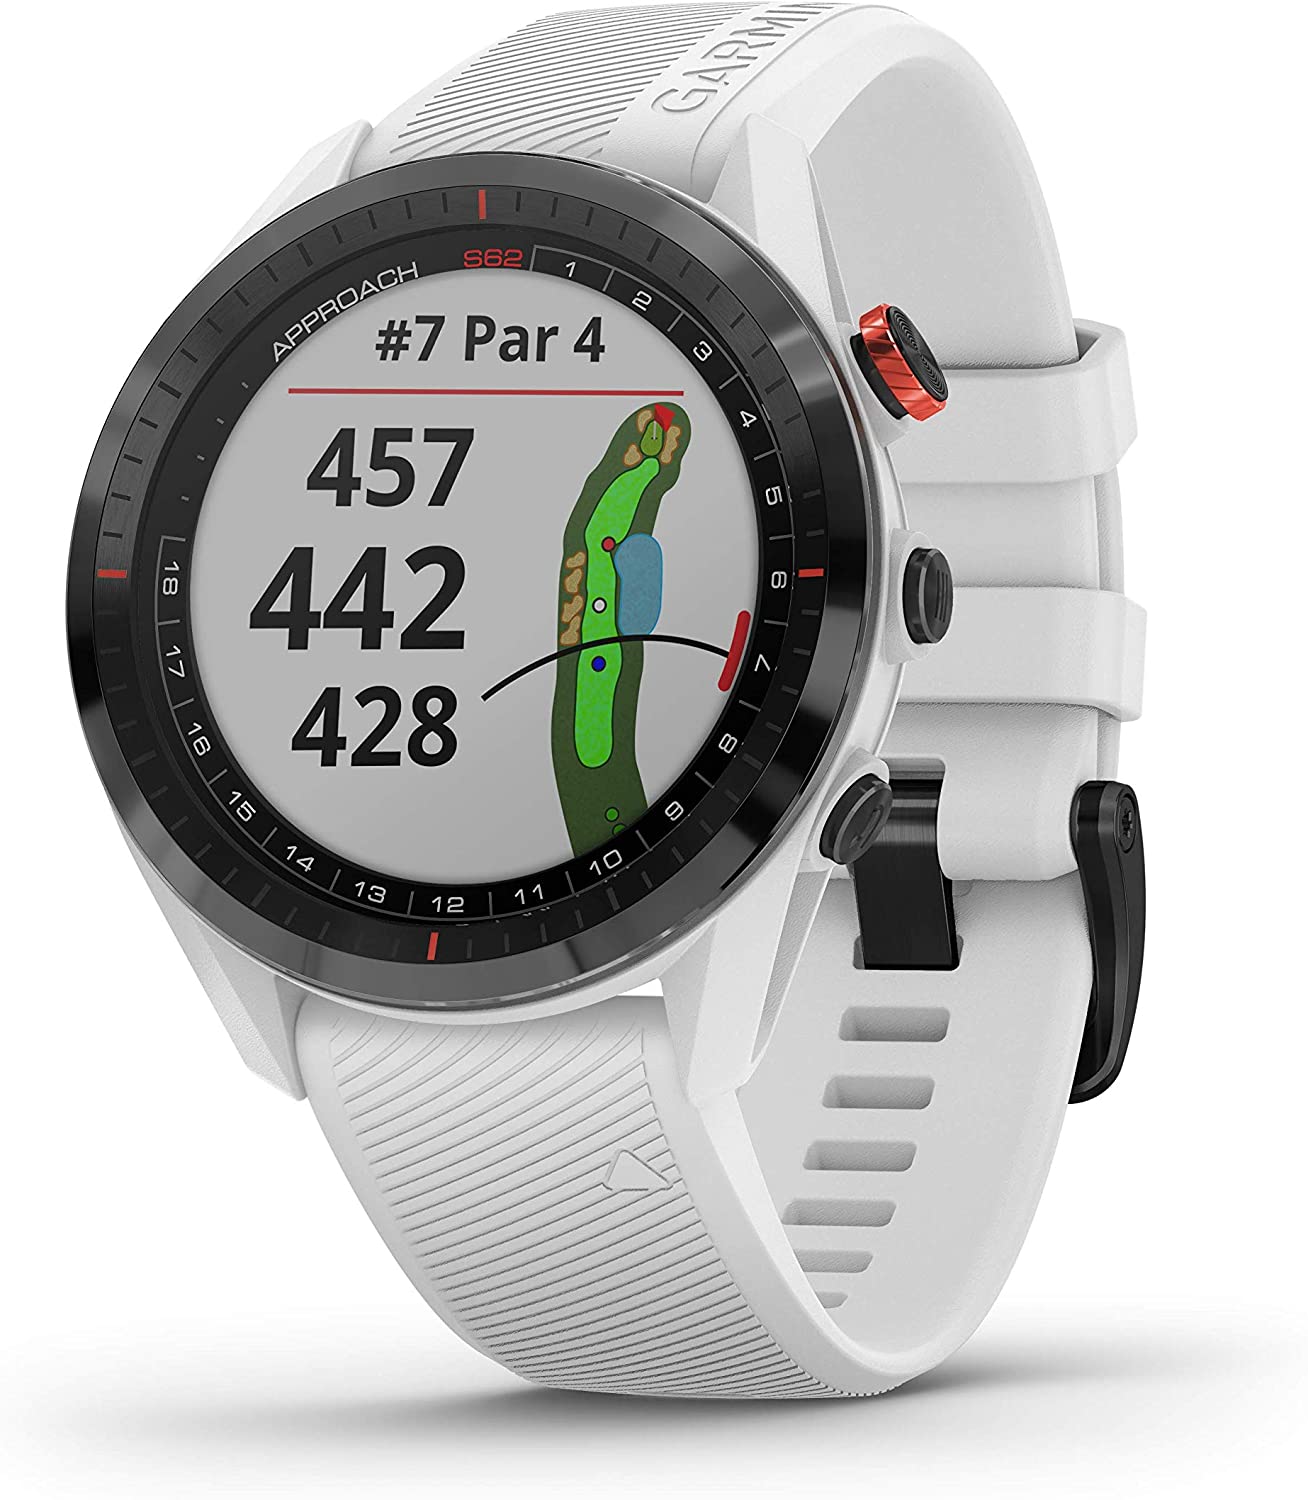 Approach S62 Premium Golf GPS Watch